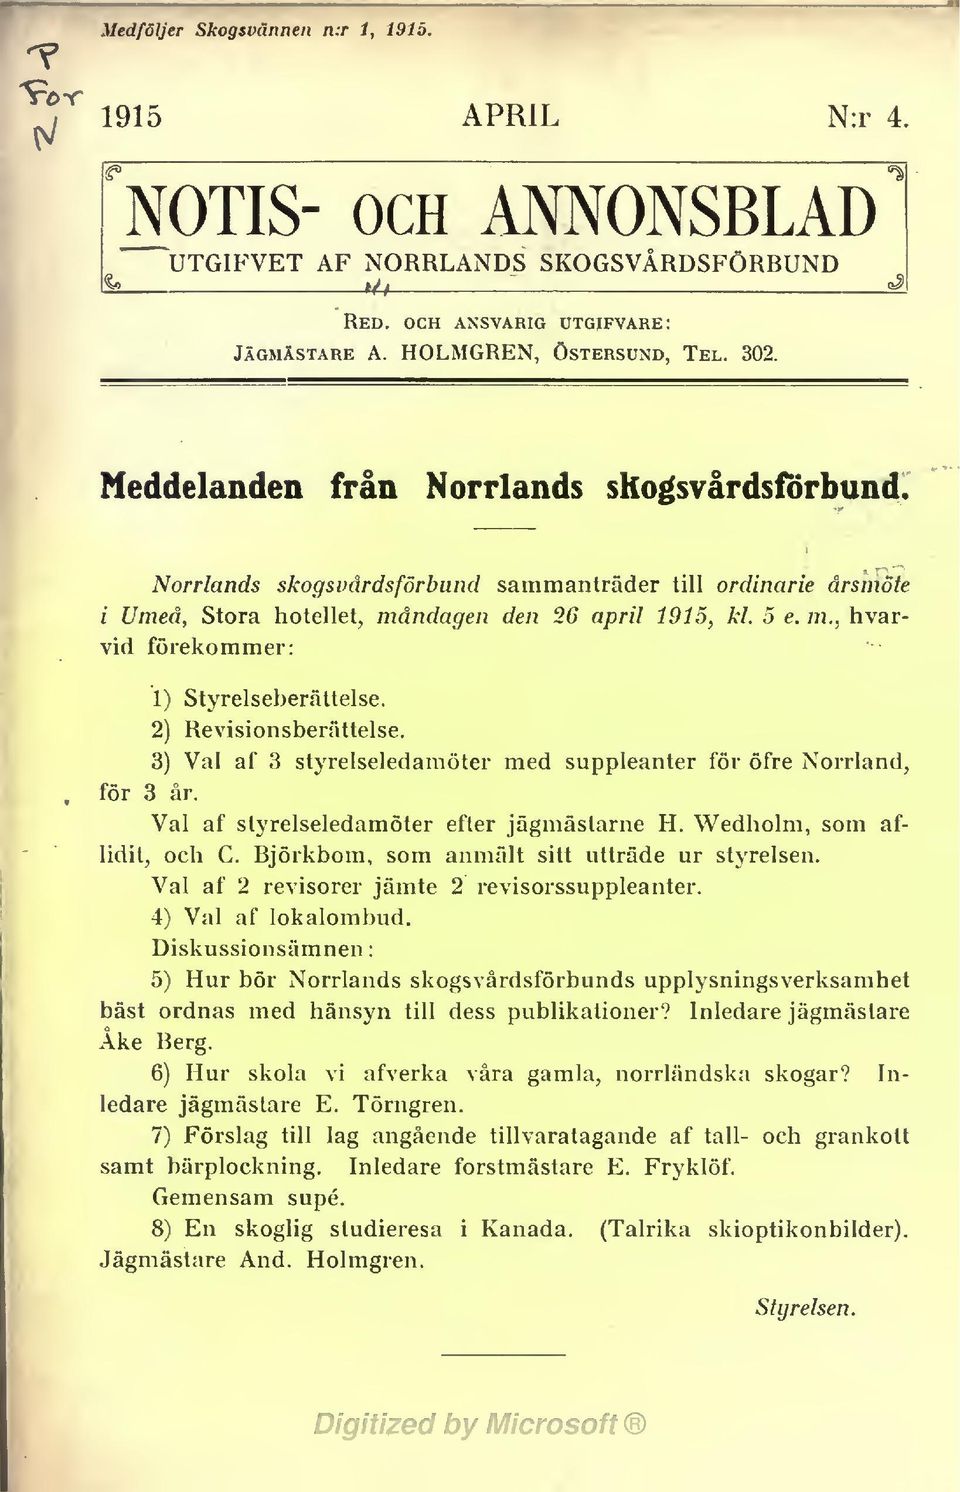 3) Val af 3 styrelseledamöter med suppleanter för öfre Norrland, för 3 år. Val af styrelseledamöter efter jägmästarne H. Wedholm, som aflidit, och C. Björkbom, som anmält sitt utträde ur styrelsen.